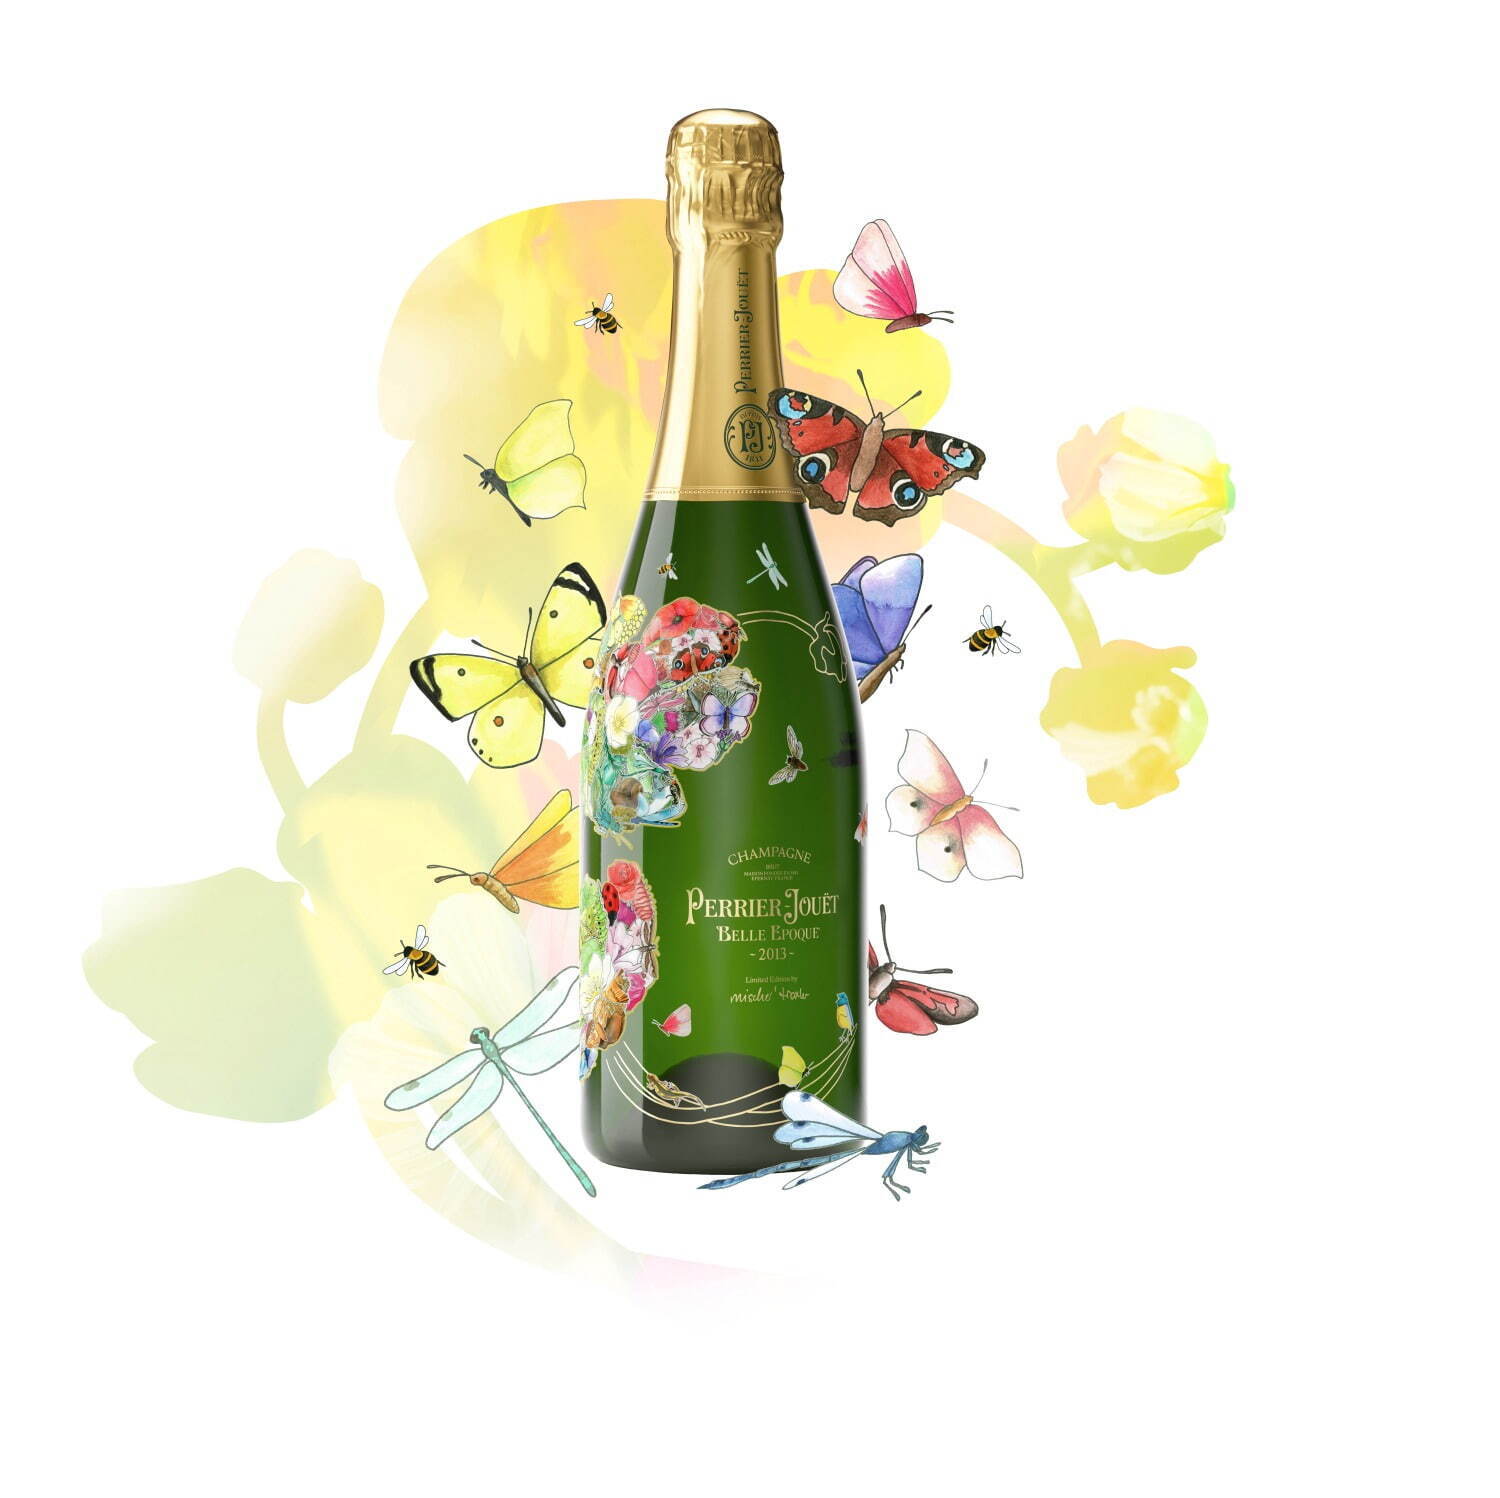 ペリエ ジュエから特別なアネモネを描いた数量限定デザインボトル、2